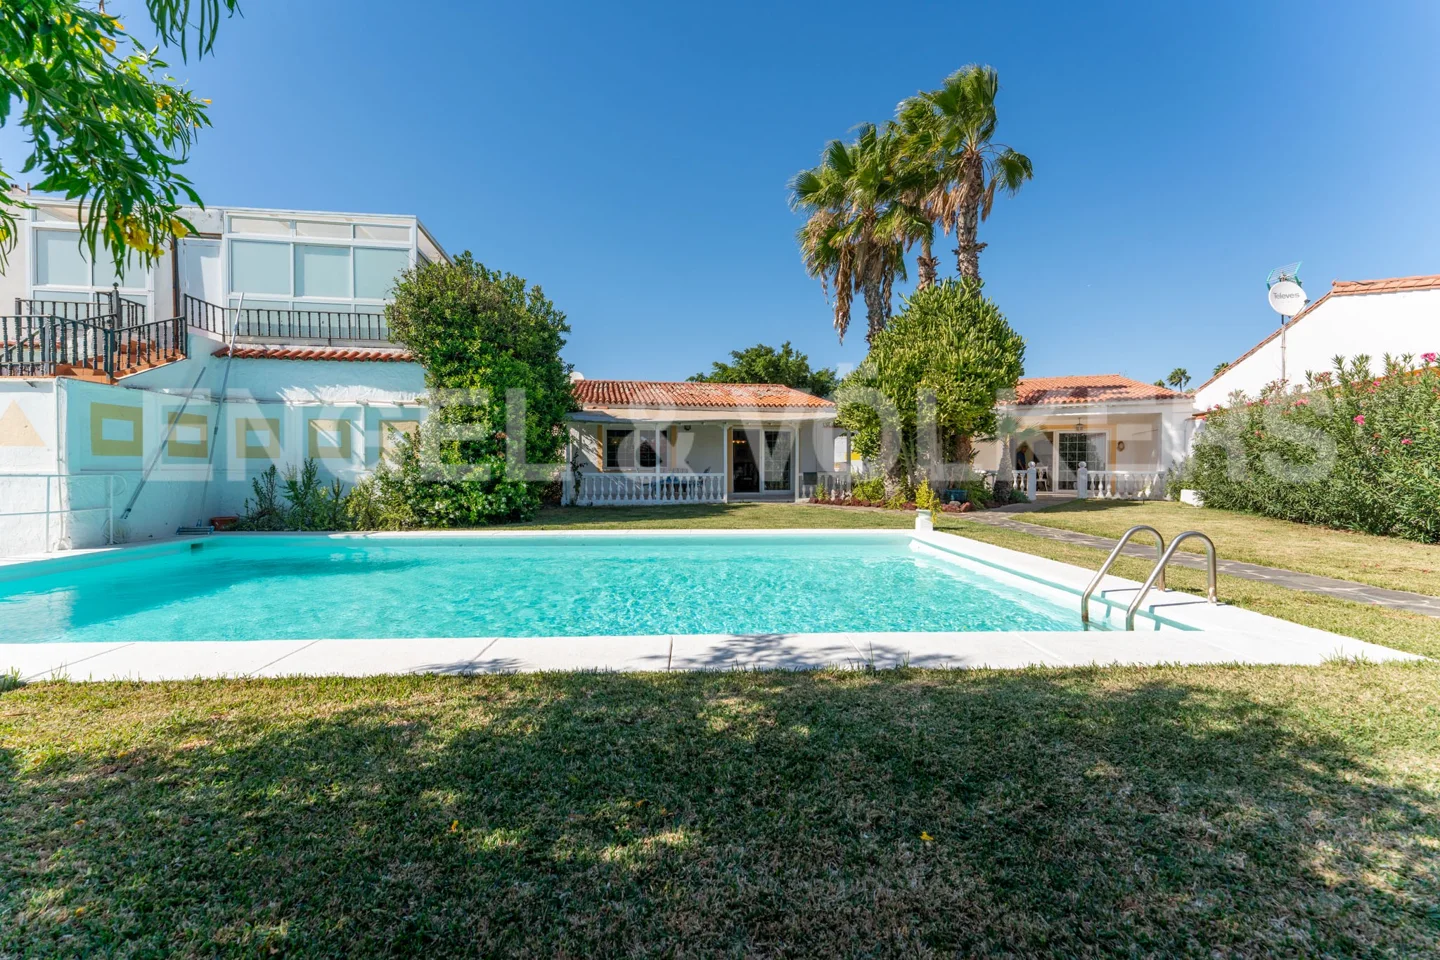 Ein Kleinod in Playa del Inglés: zwei Villen, zwei Bungalows und ein schöner Garten mit Swimmingpool